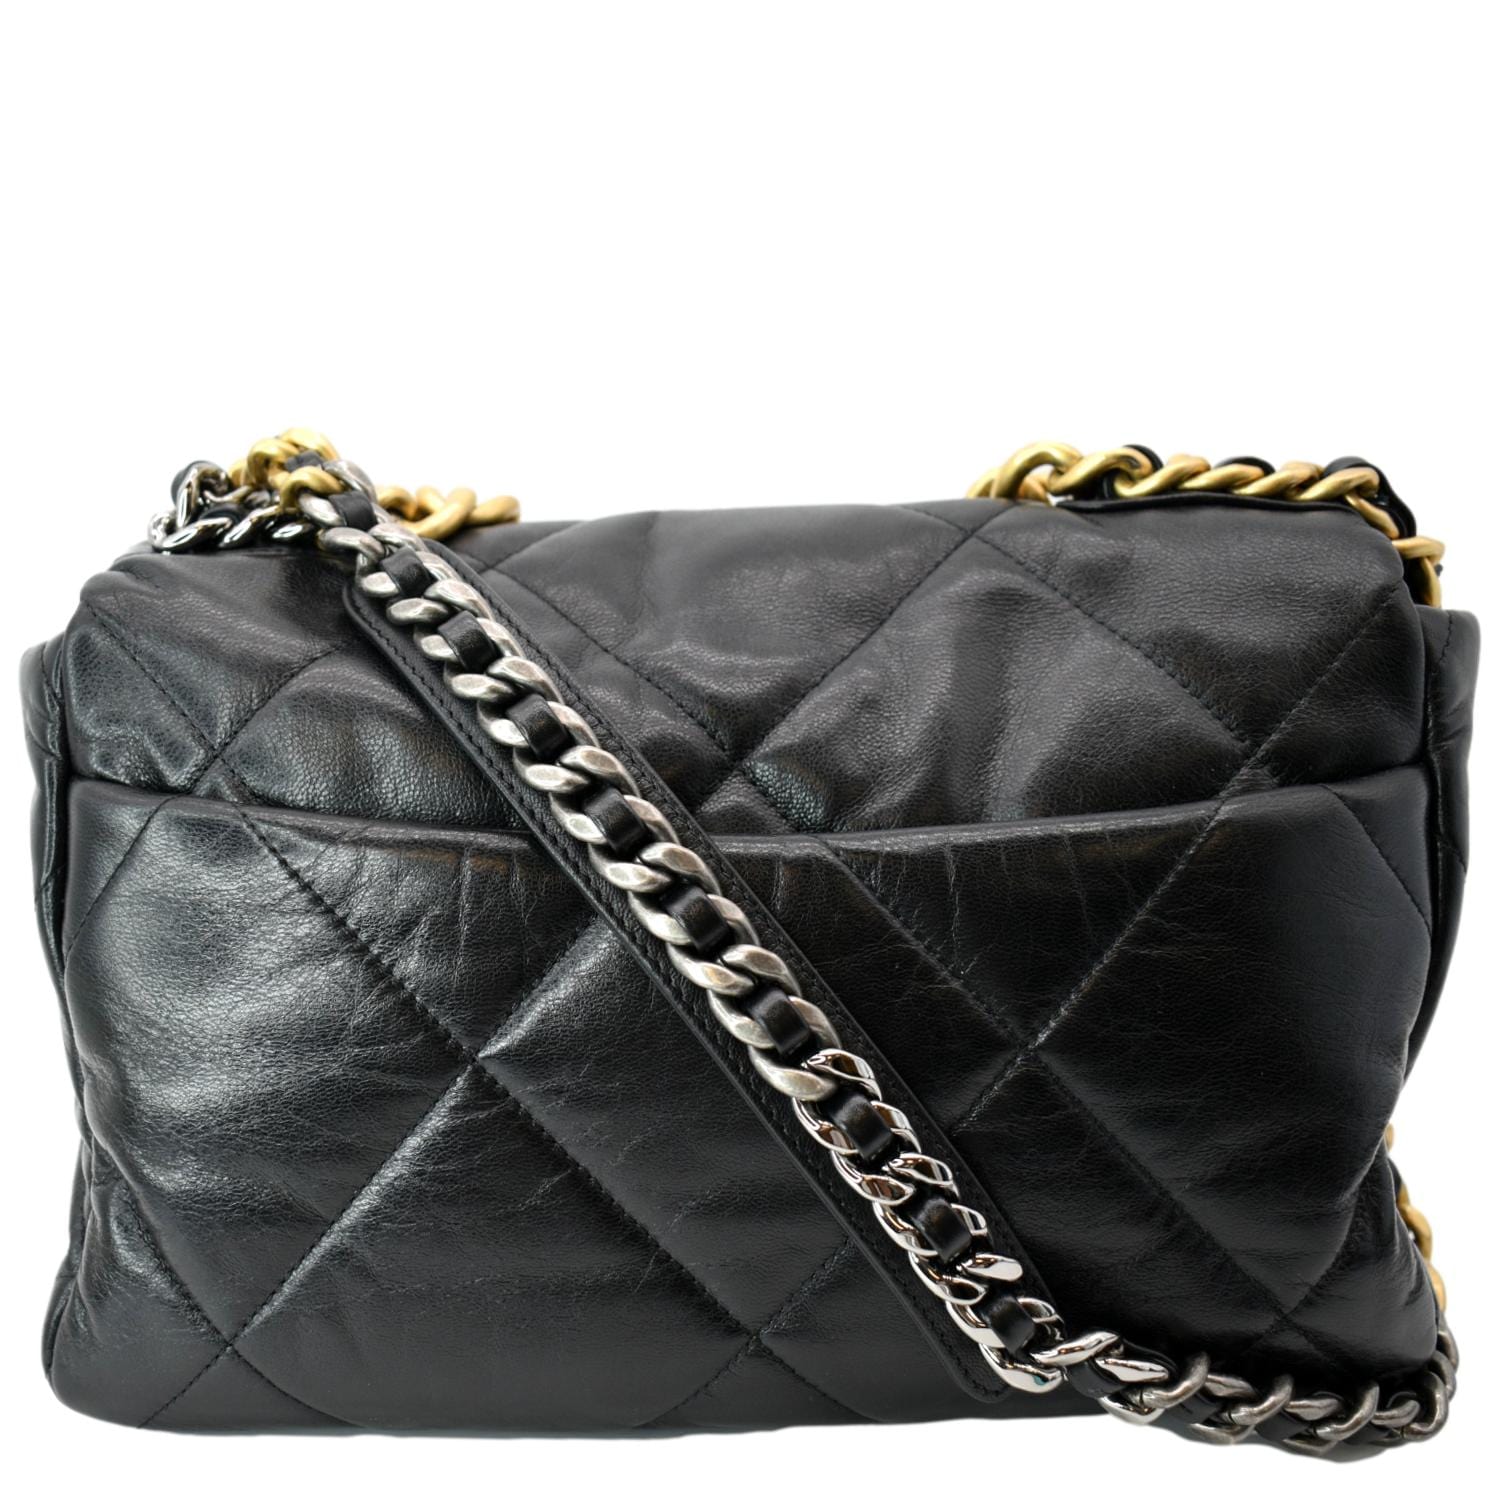 Chanel Medium 19 Flap Bag - Black Shoulder Bags, Handbags